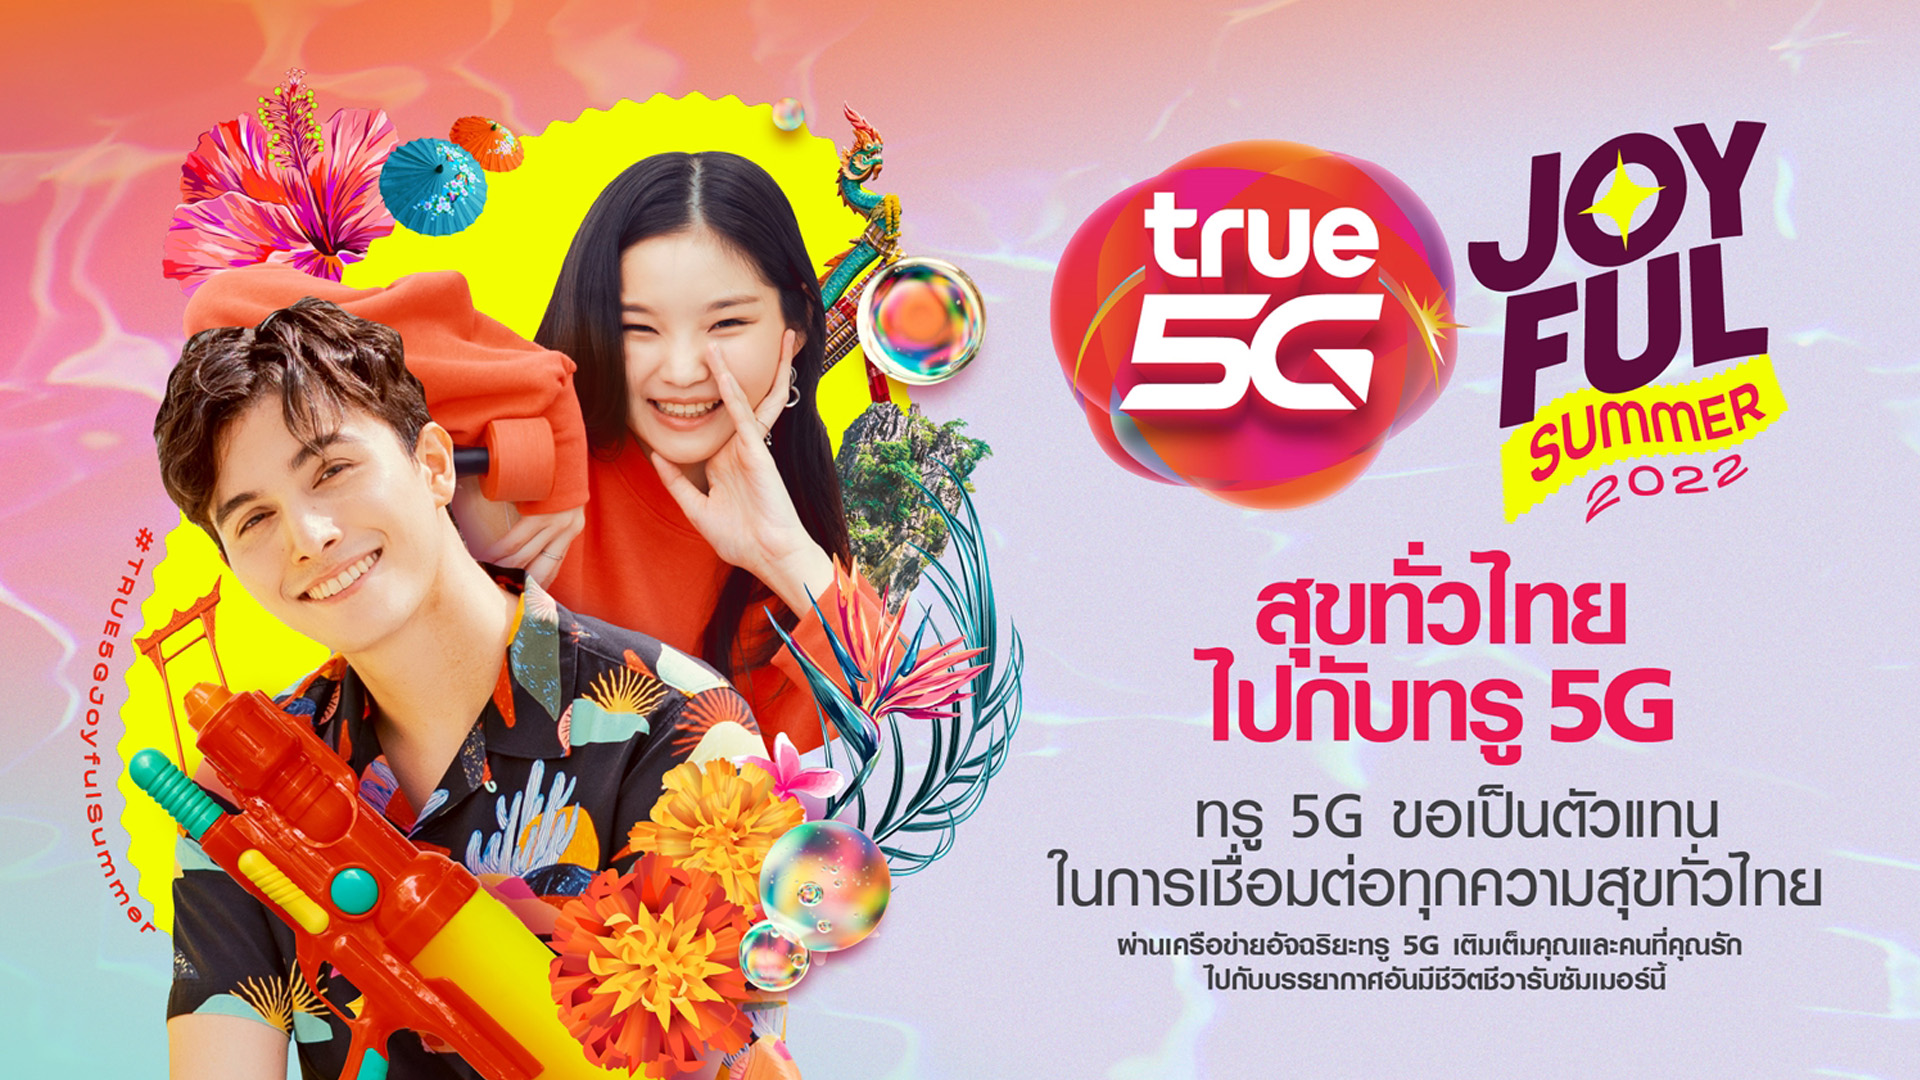 ทรู 5G ต้อนรับเทศกาลสงกรานต์ ชวนคนไทยร่วมส่งต่อความรู้สึก กับพรีเมี่ยมและกิจกรรมสุดคูล พร้อมโปรสุดปัง